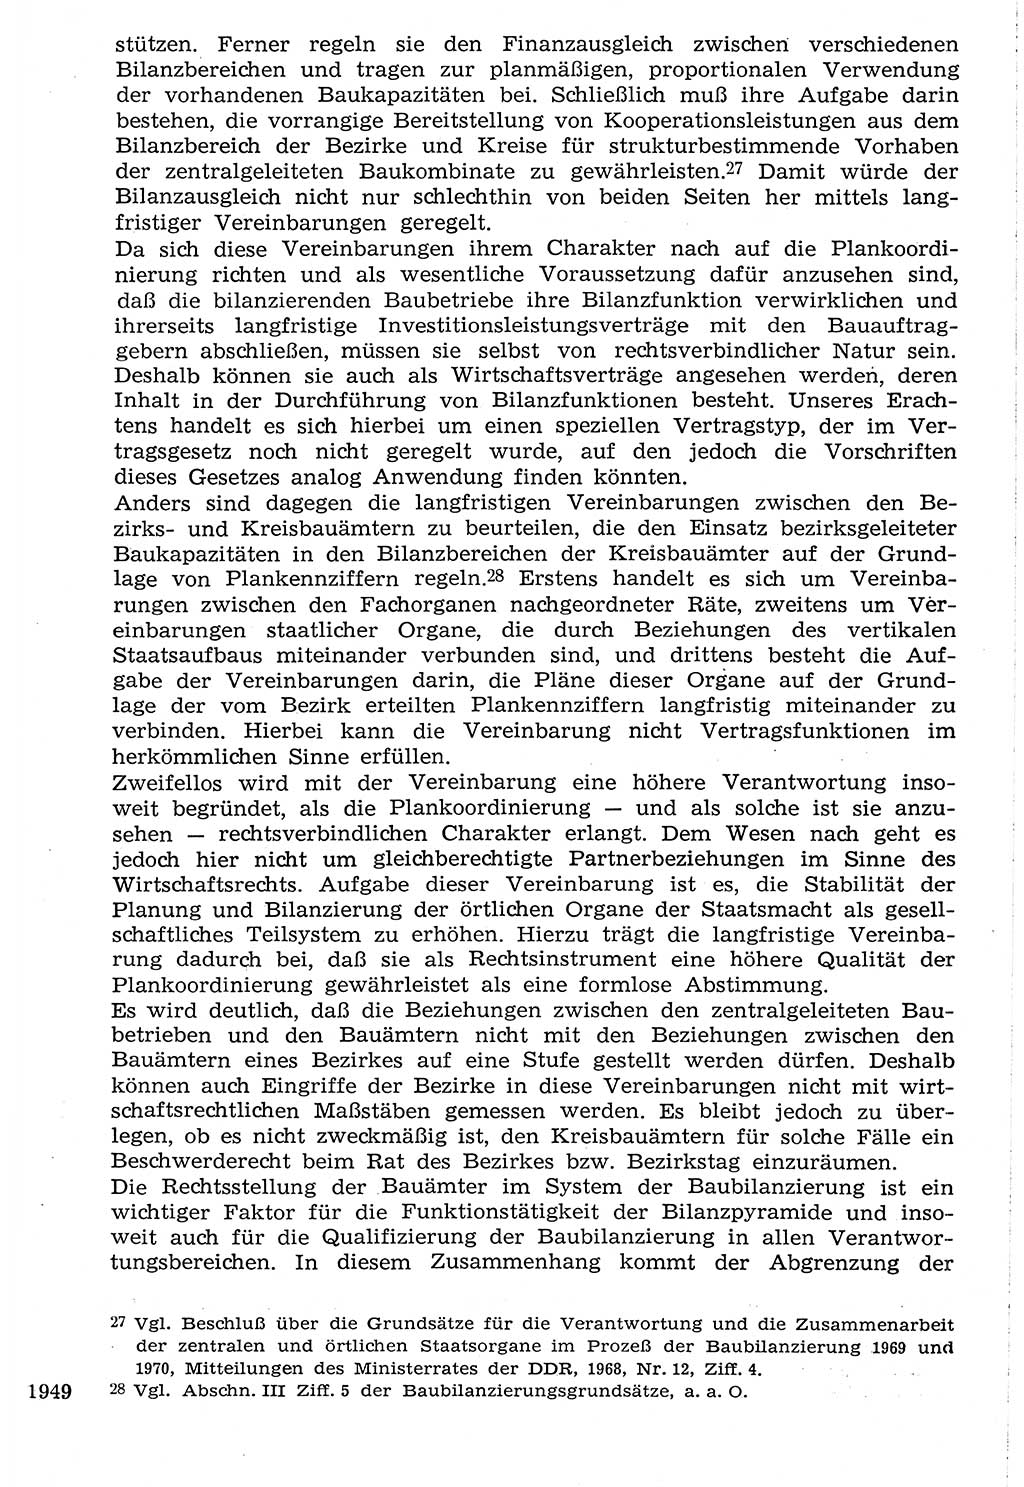 Staat und Recht (StuR), 17. Jahrgang [Deutsche Demokratische Republik (DDR)] 1968, Seite 1949 (StuR DDR 1968, S. 1949)